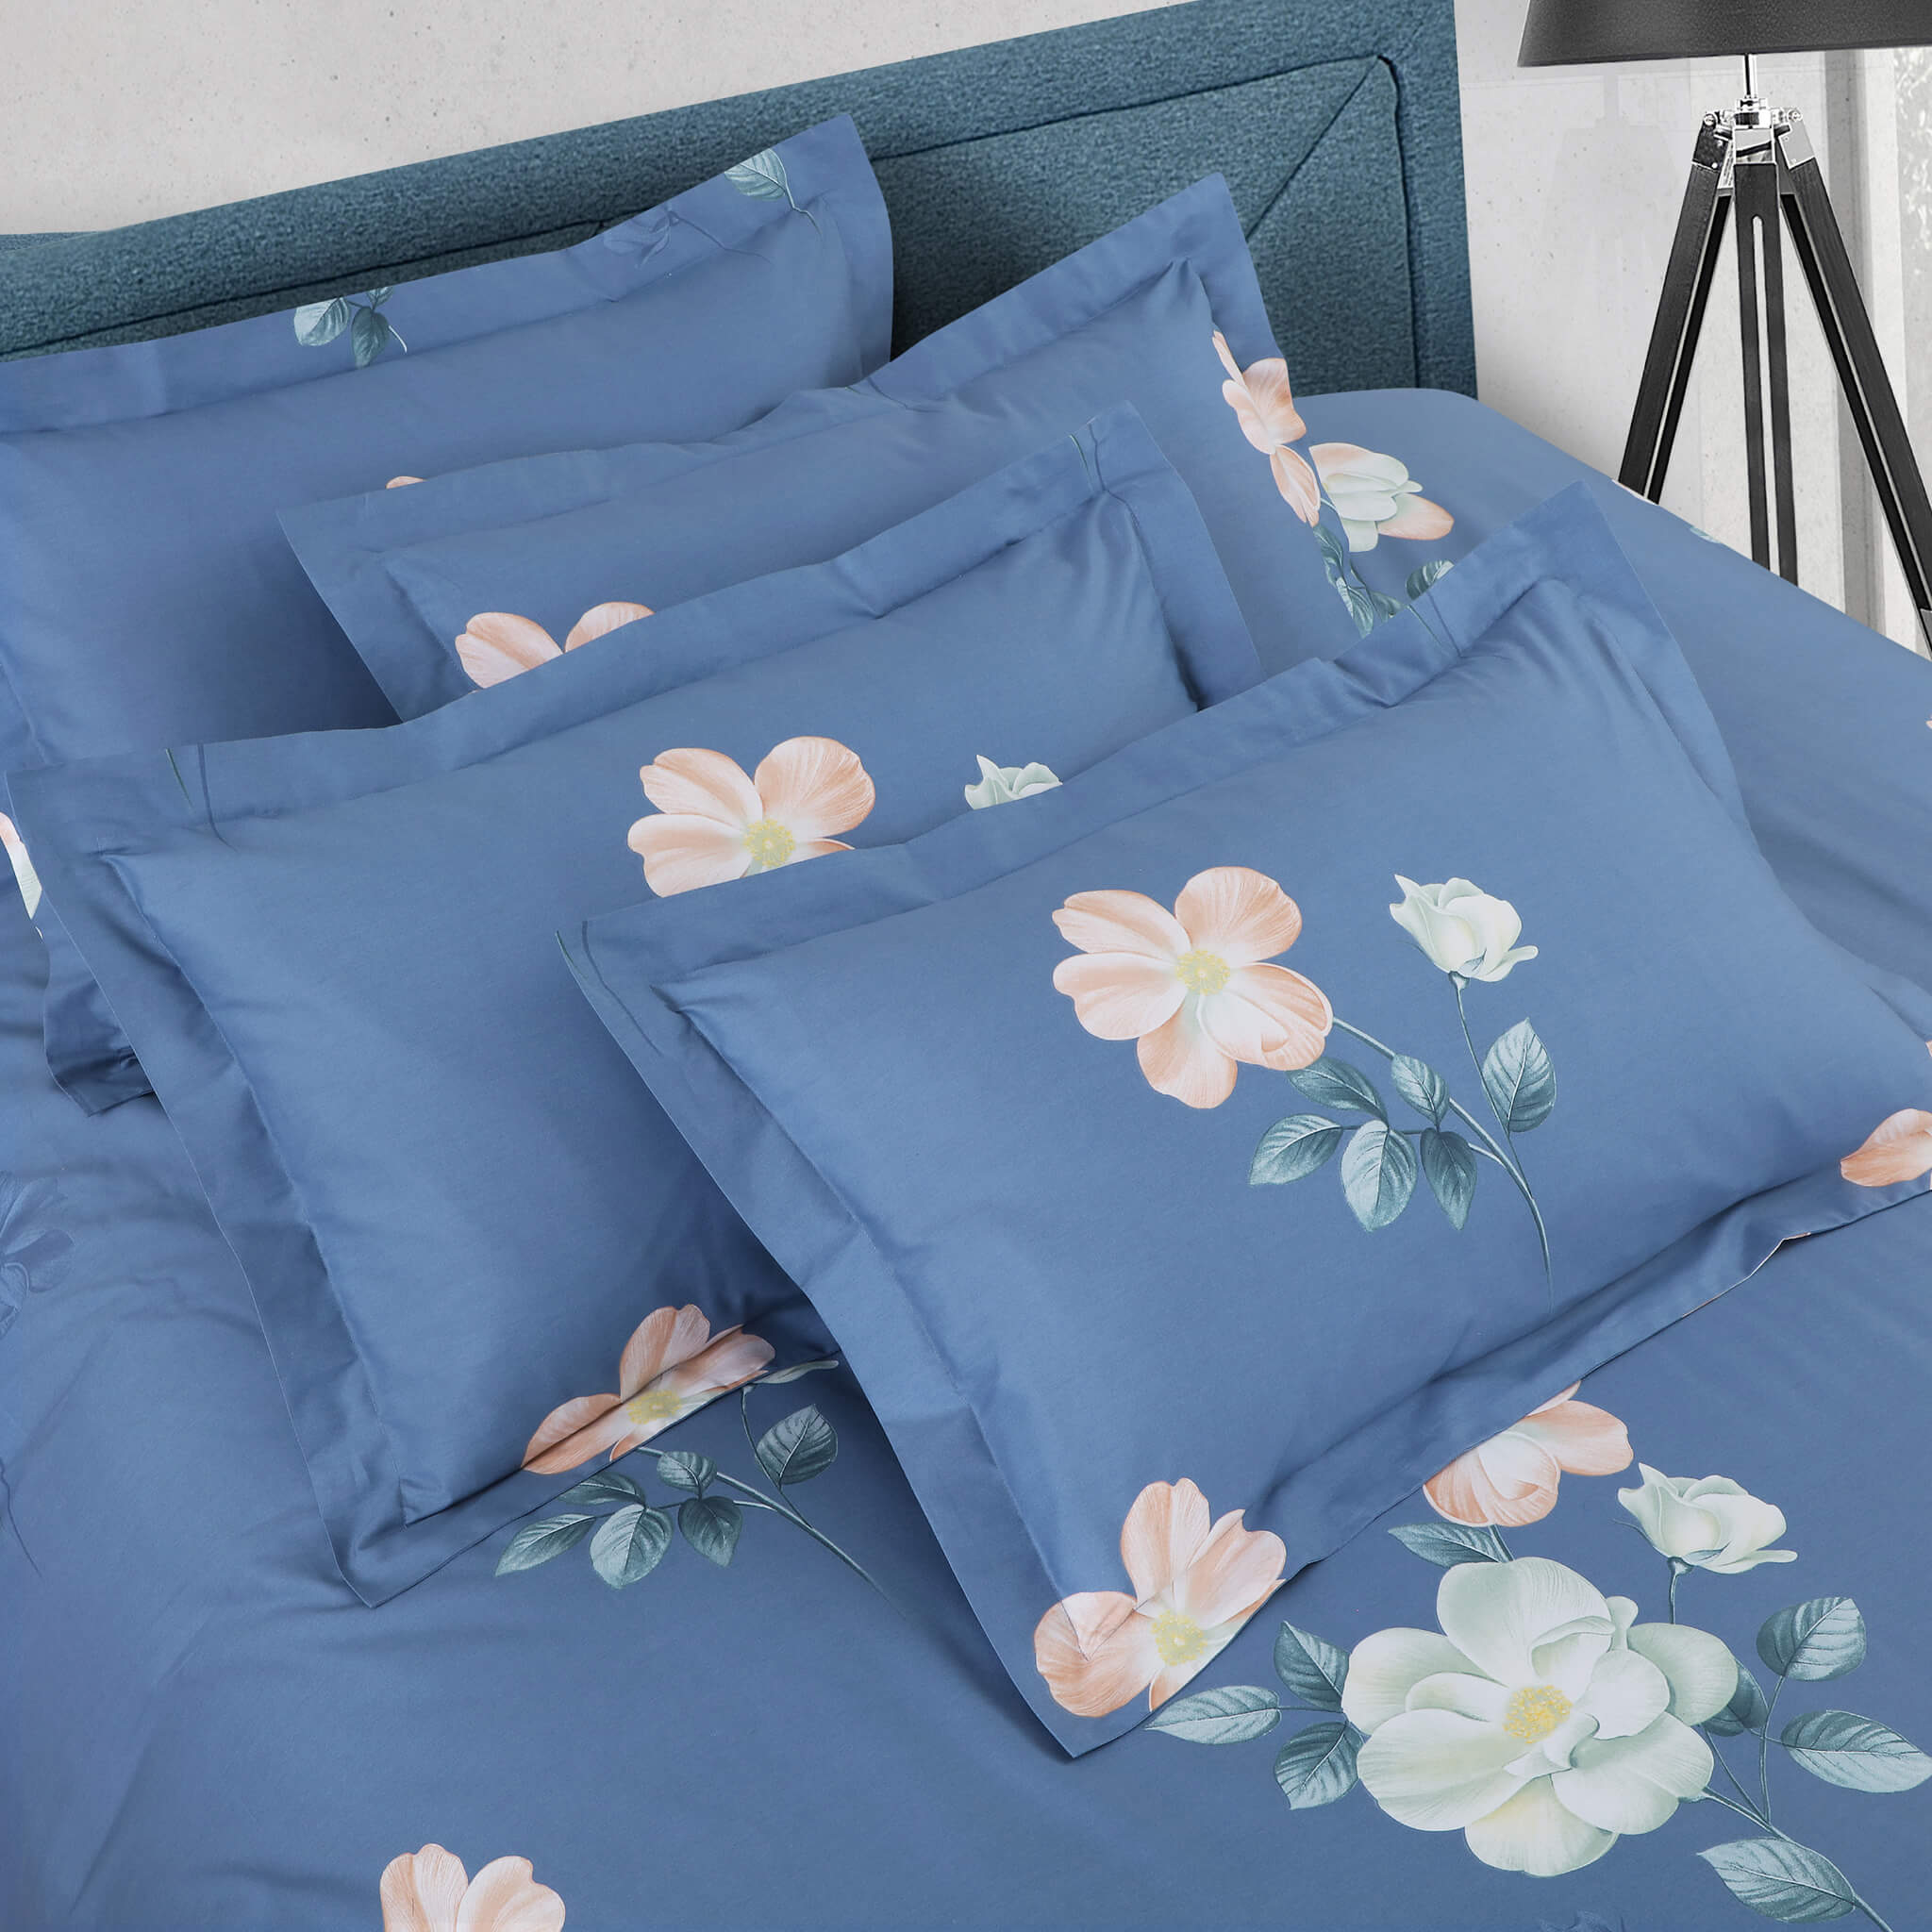 Malako Royale XL Blue Floral 100% Cotton King Size Bed Sheet/Bedding Set - MALAKO